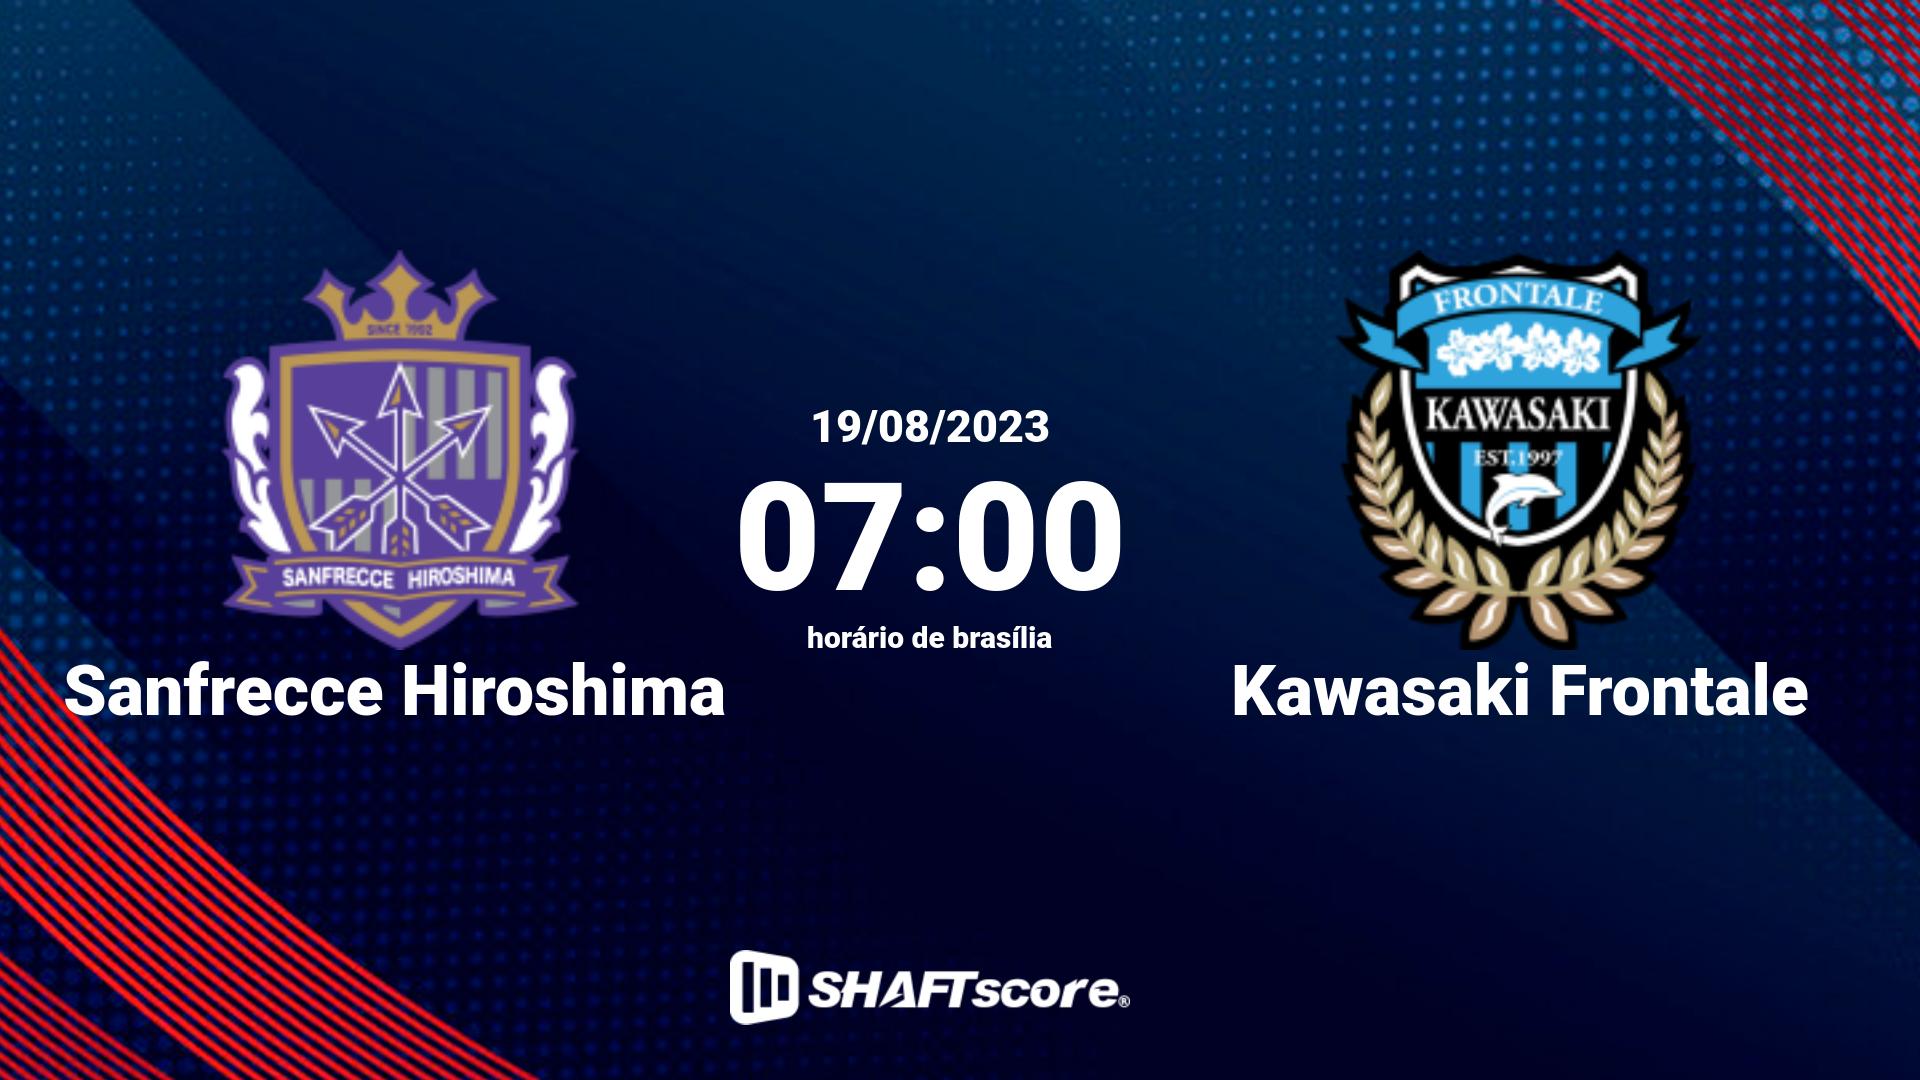 Estatísticas do jogo Sanfrecce Hiroshima vs Kawasaki Frontale 19.08 07:00